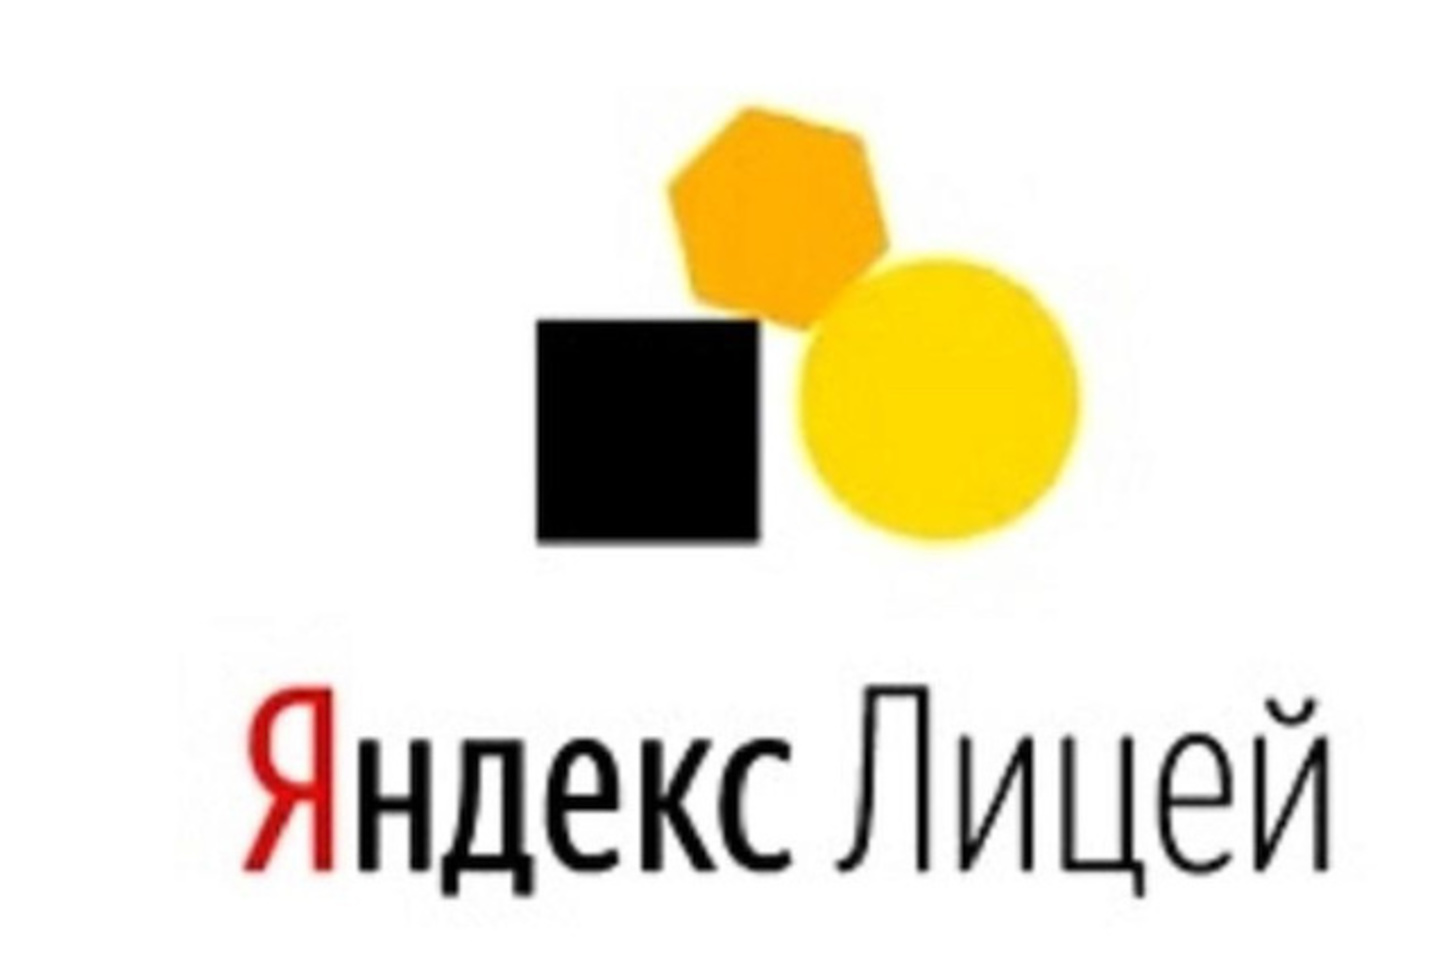 Яндекс лицей лого